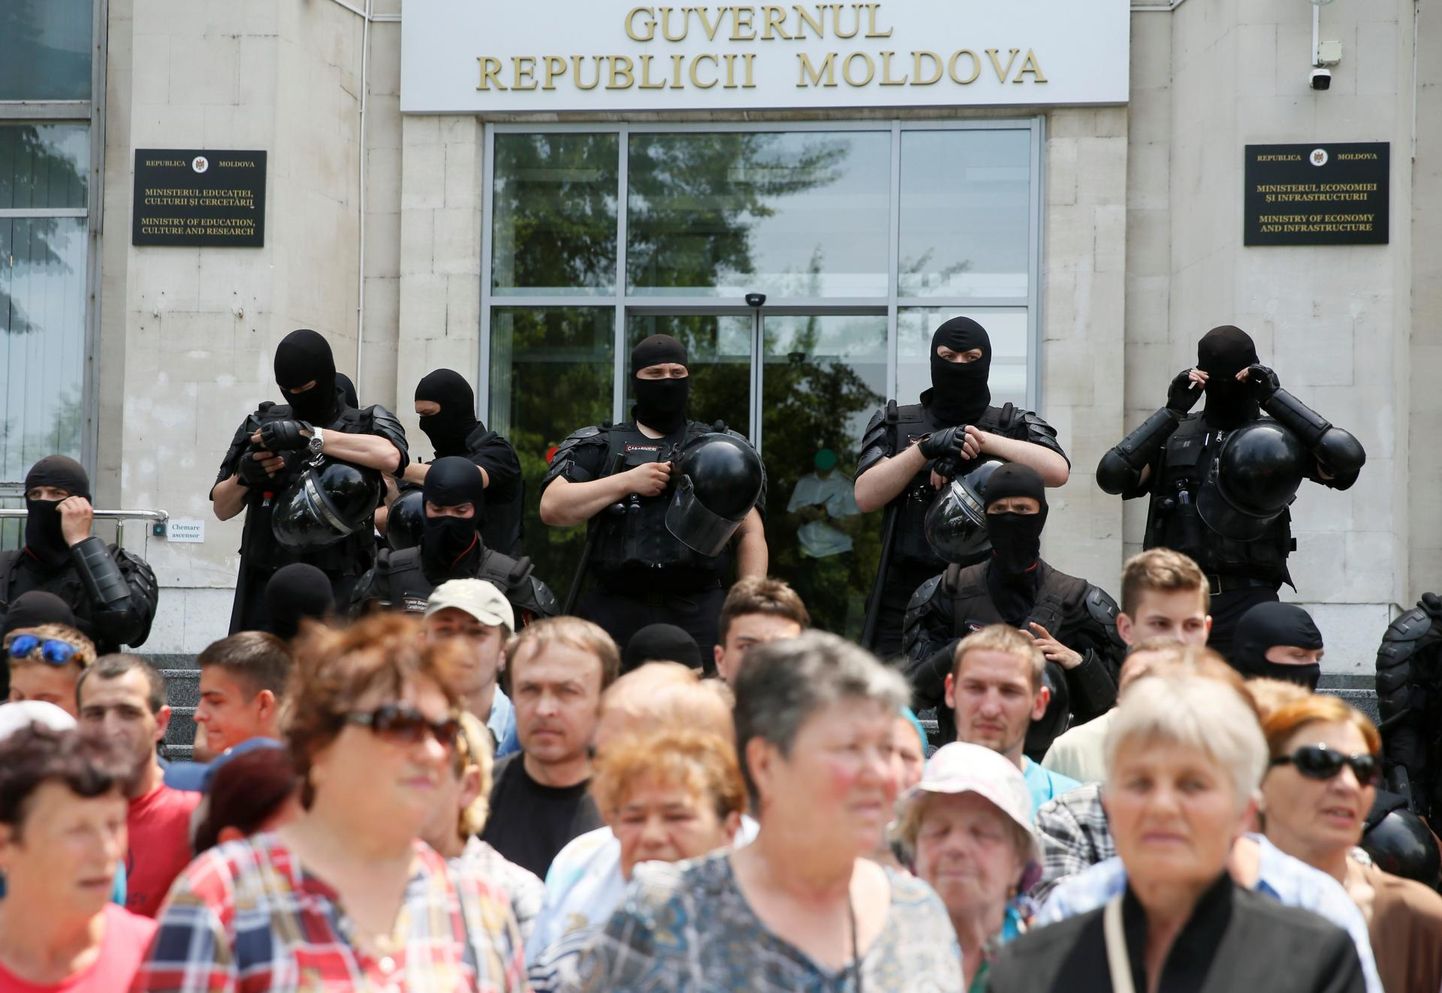 Moldova uus valitsus peab istungit. Parlamendihoone ette on kogunenud Demokraatliku Partei toetajad, kes nõuavad valitsuse laialisaatmist. Eriüksuslased jälgivad, et rahvakogunemine ei muutuks vägivaldseks. 